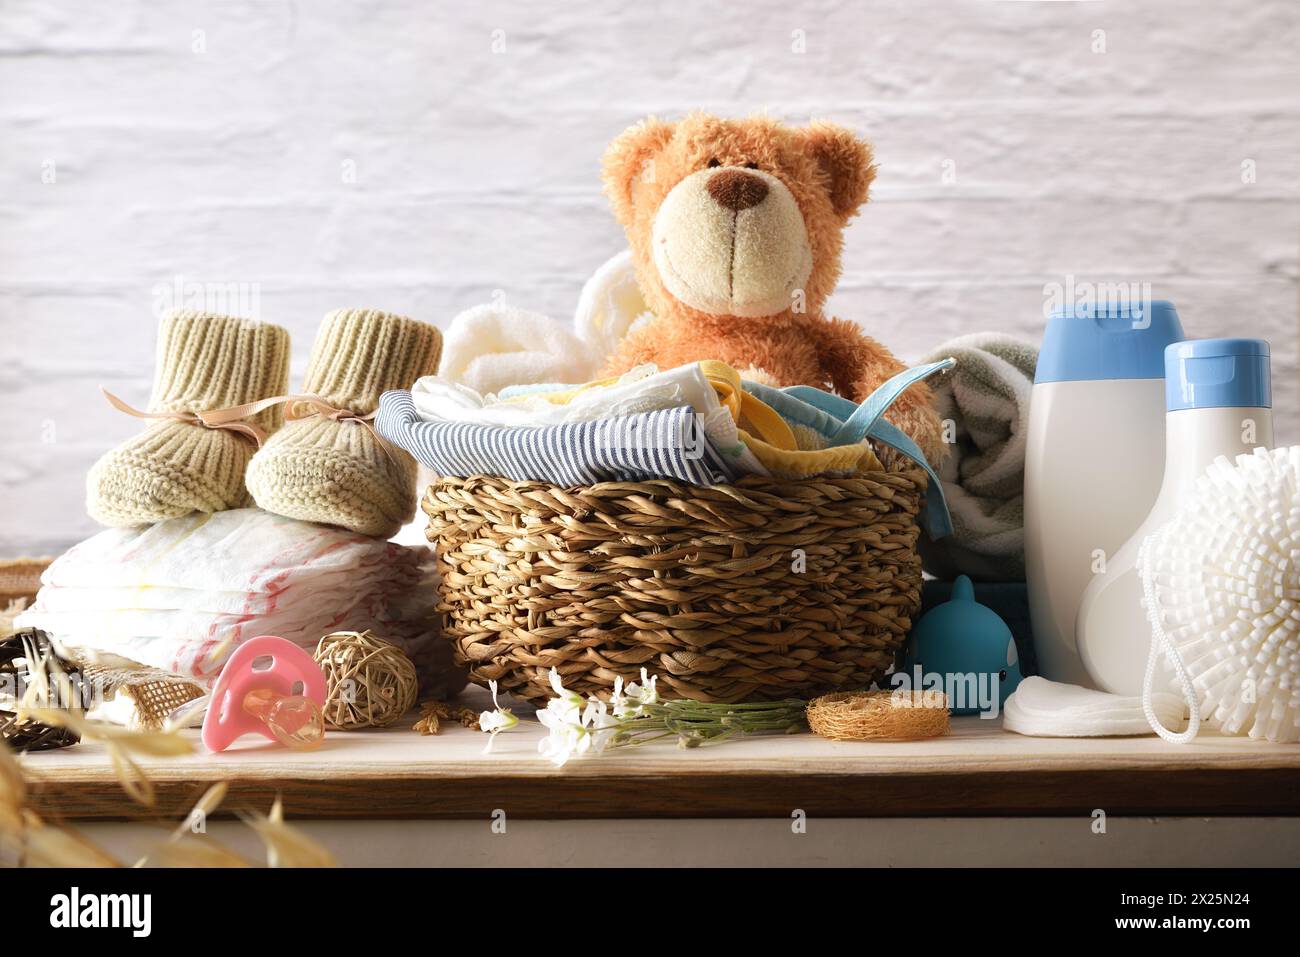 Abiti e accessori per abbigliamento e cura del bambino su cassetti in legno in camera con pareti in mattoni bianchi. Vista frontale. Foto Stock